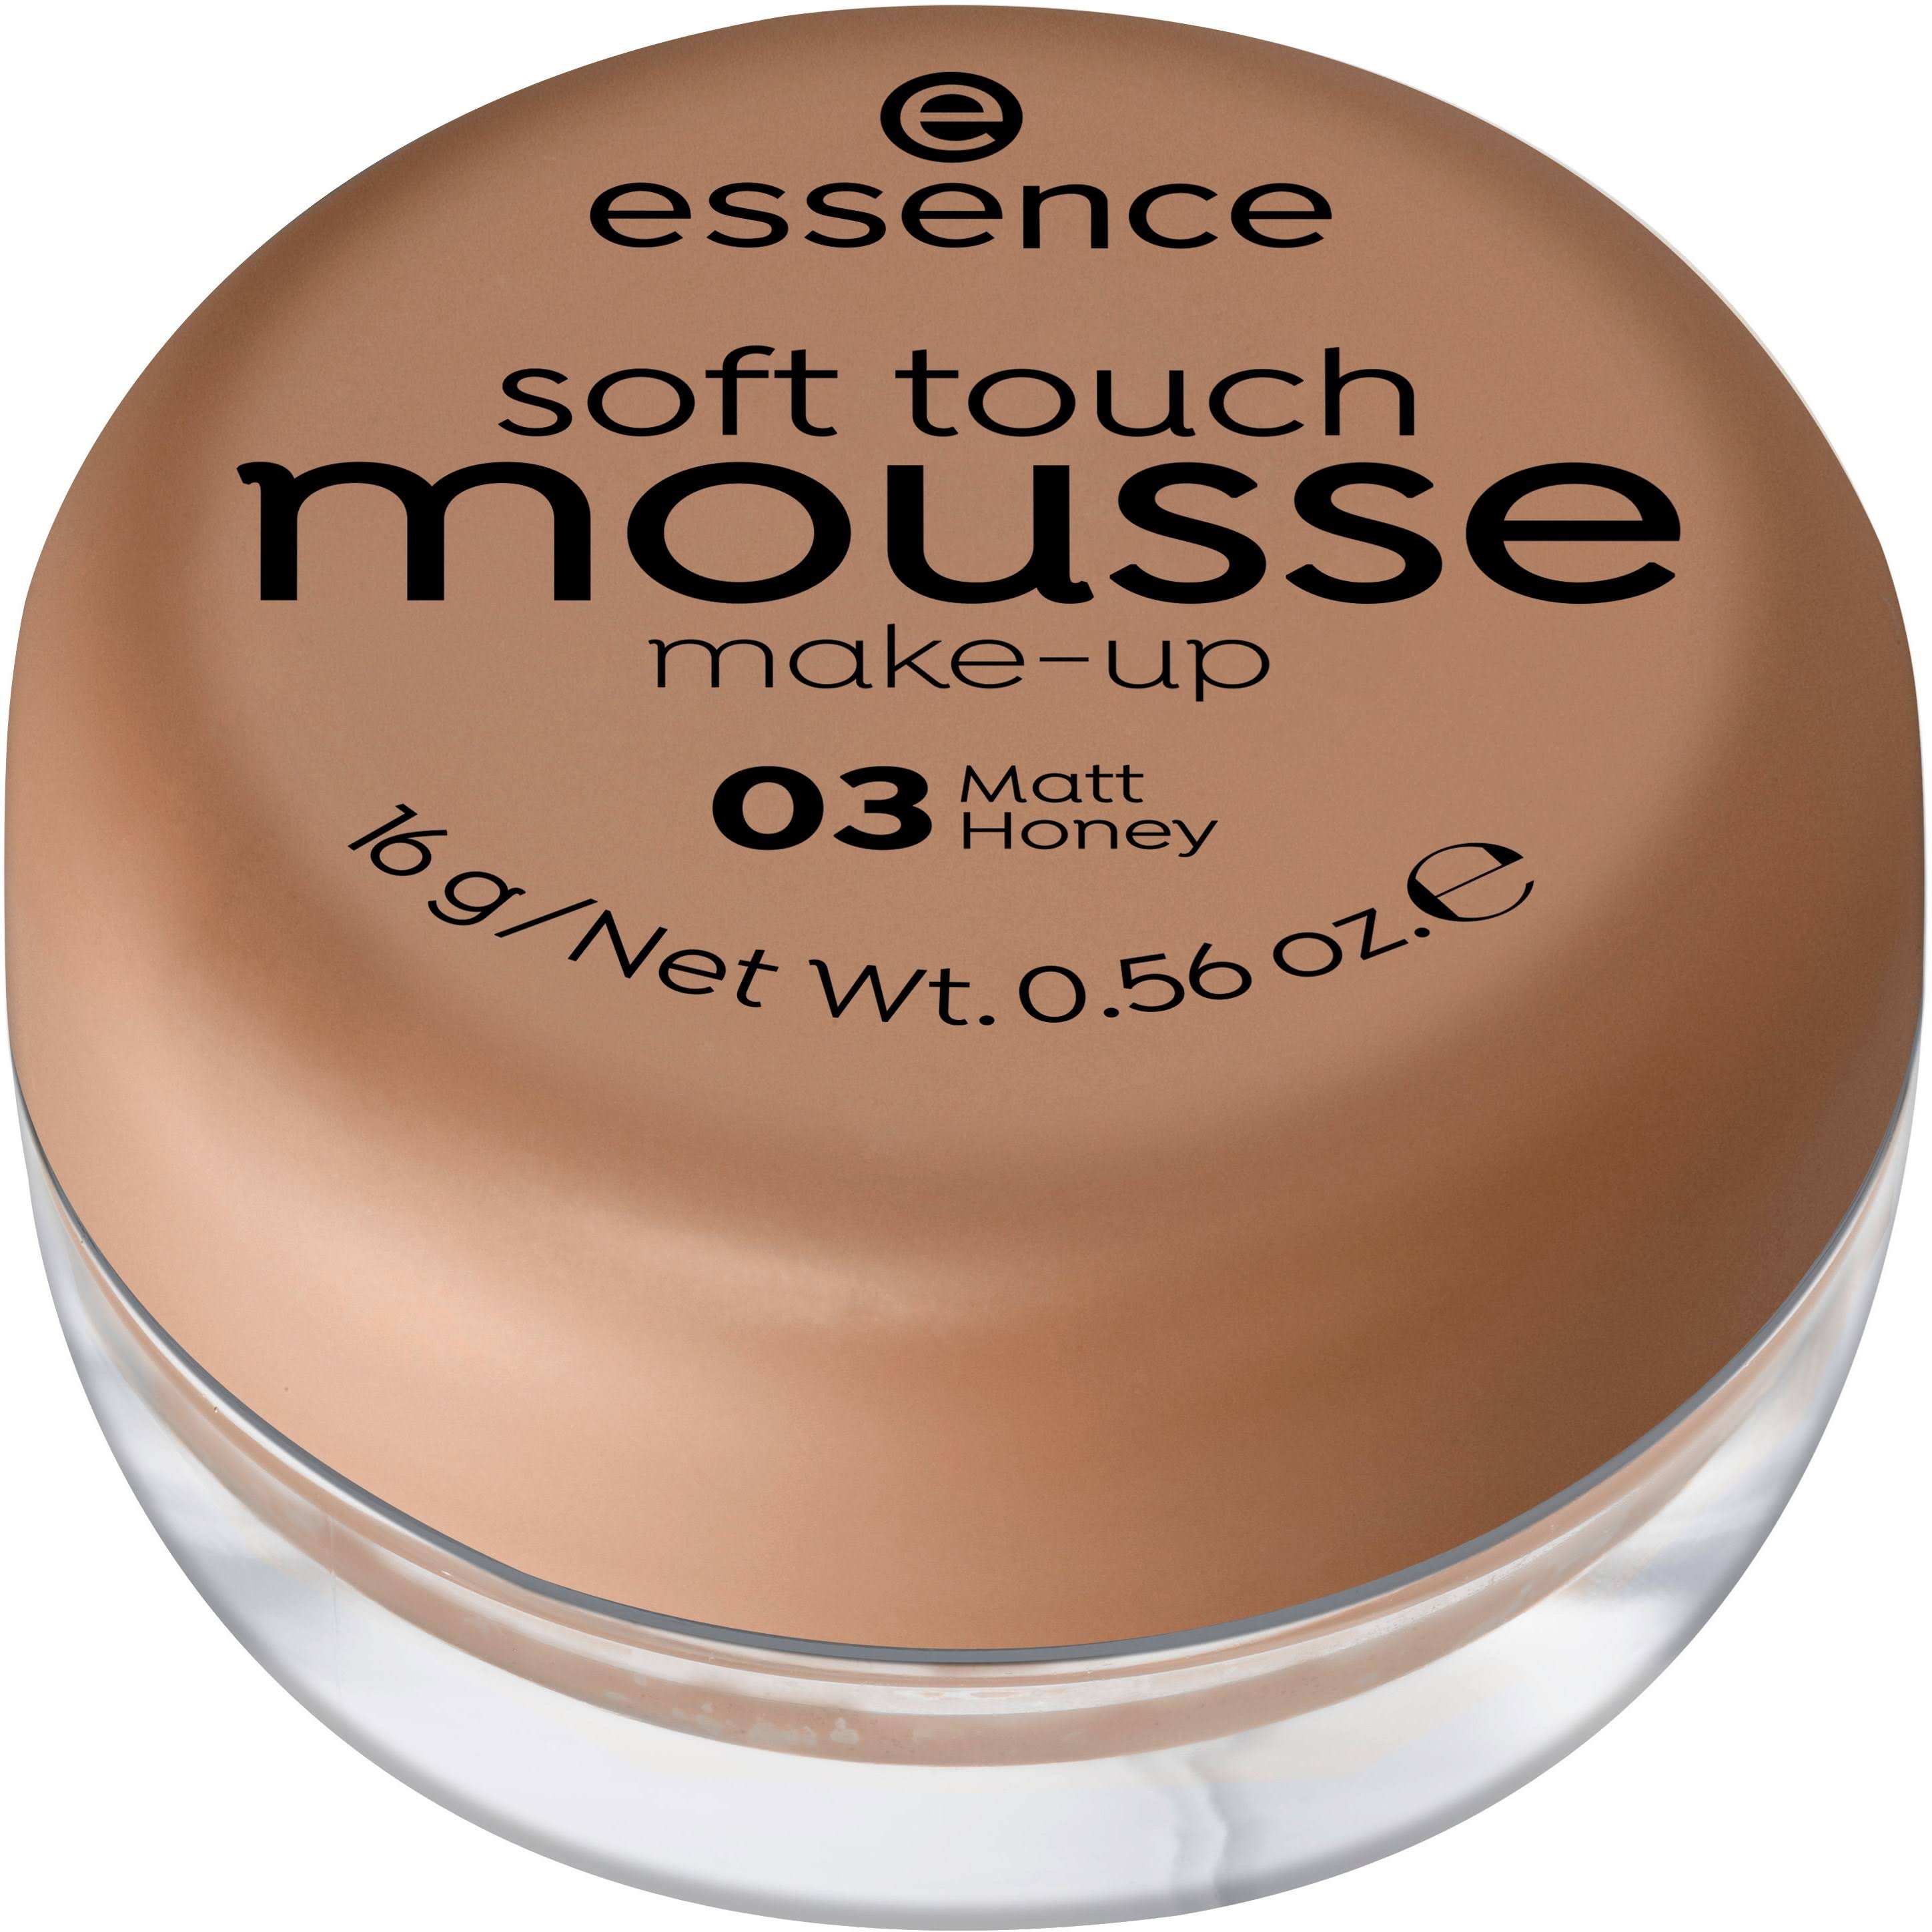 Essence Soft Touch Mousse Make-Up 16g 03 Matt Honey